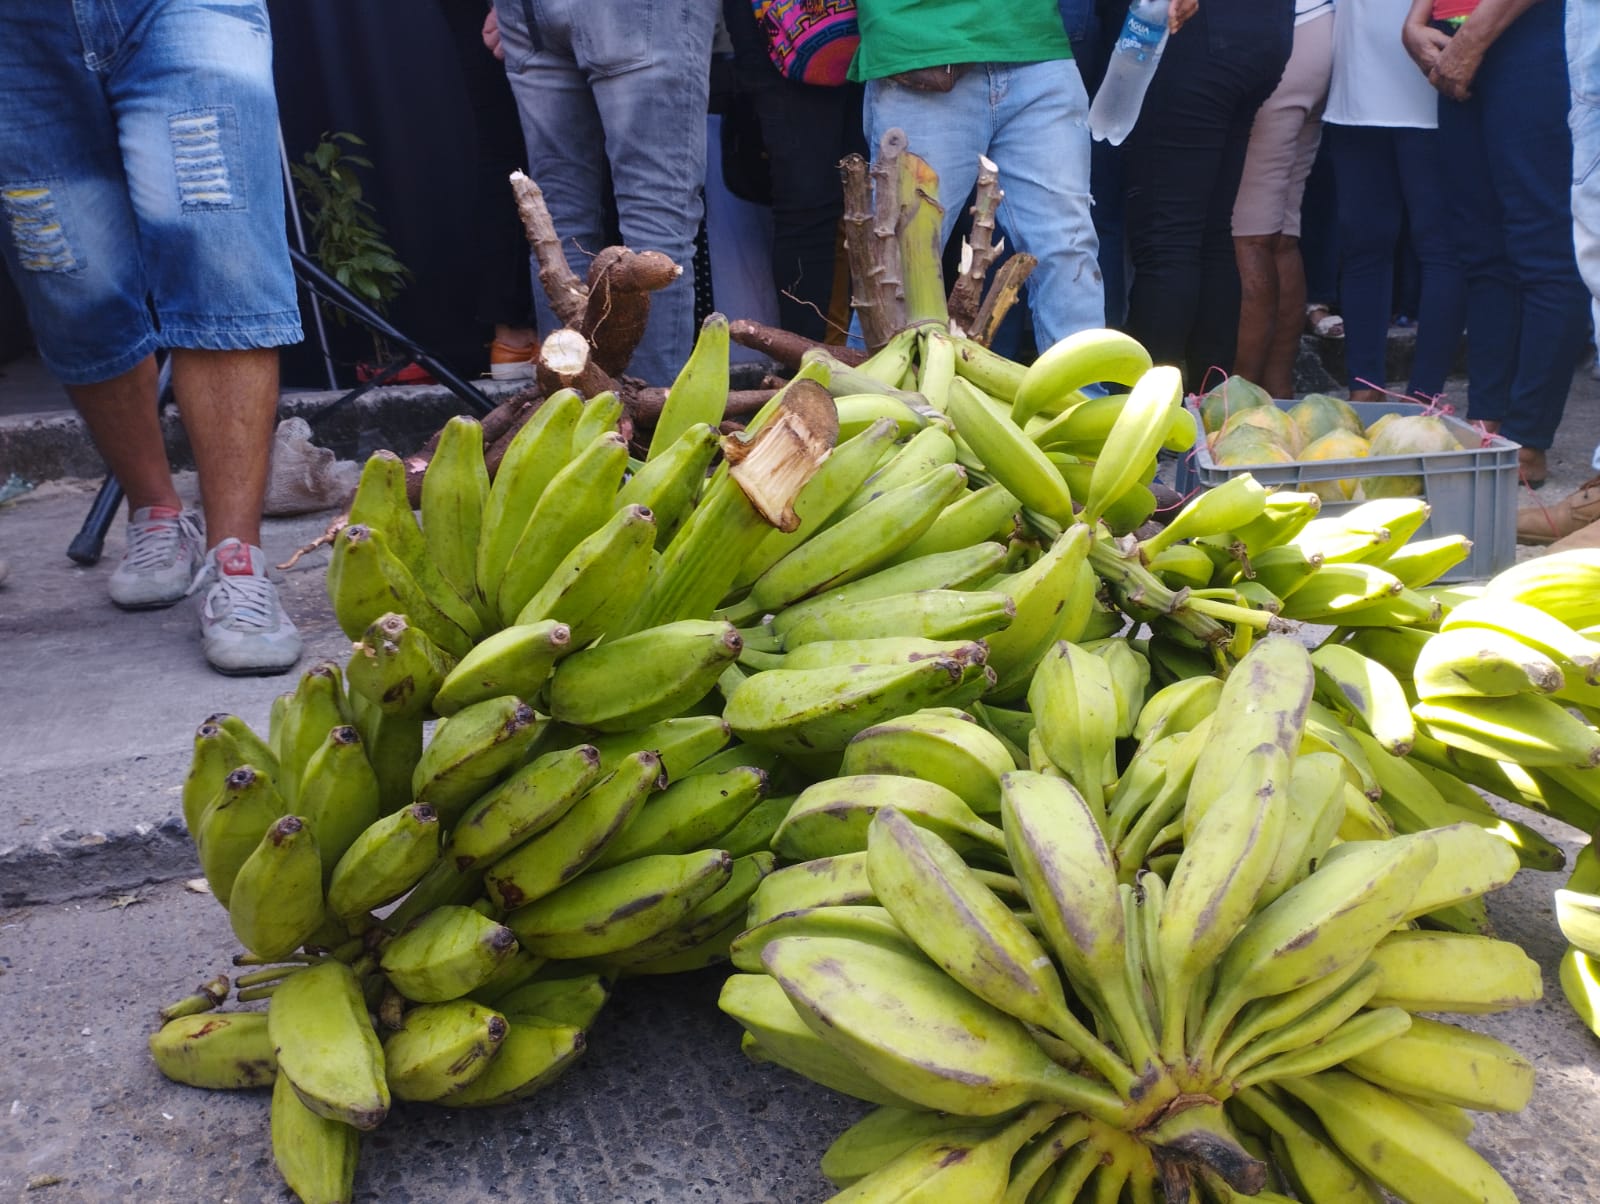  Toneladas de alimentos llegaron a Barranquilla, desde Cachenche